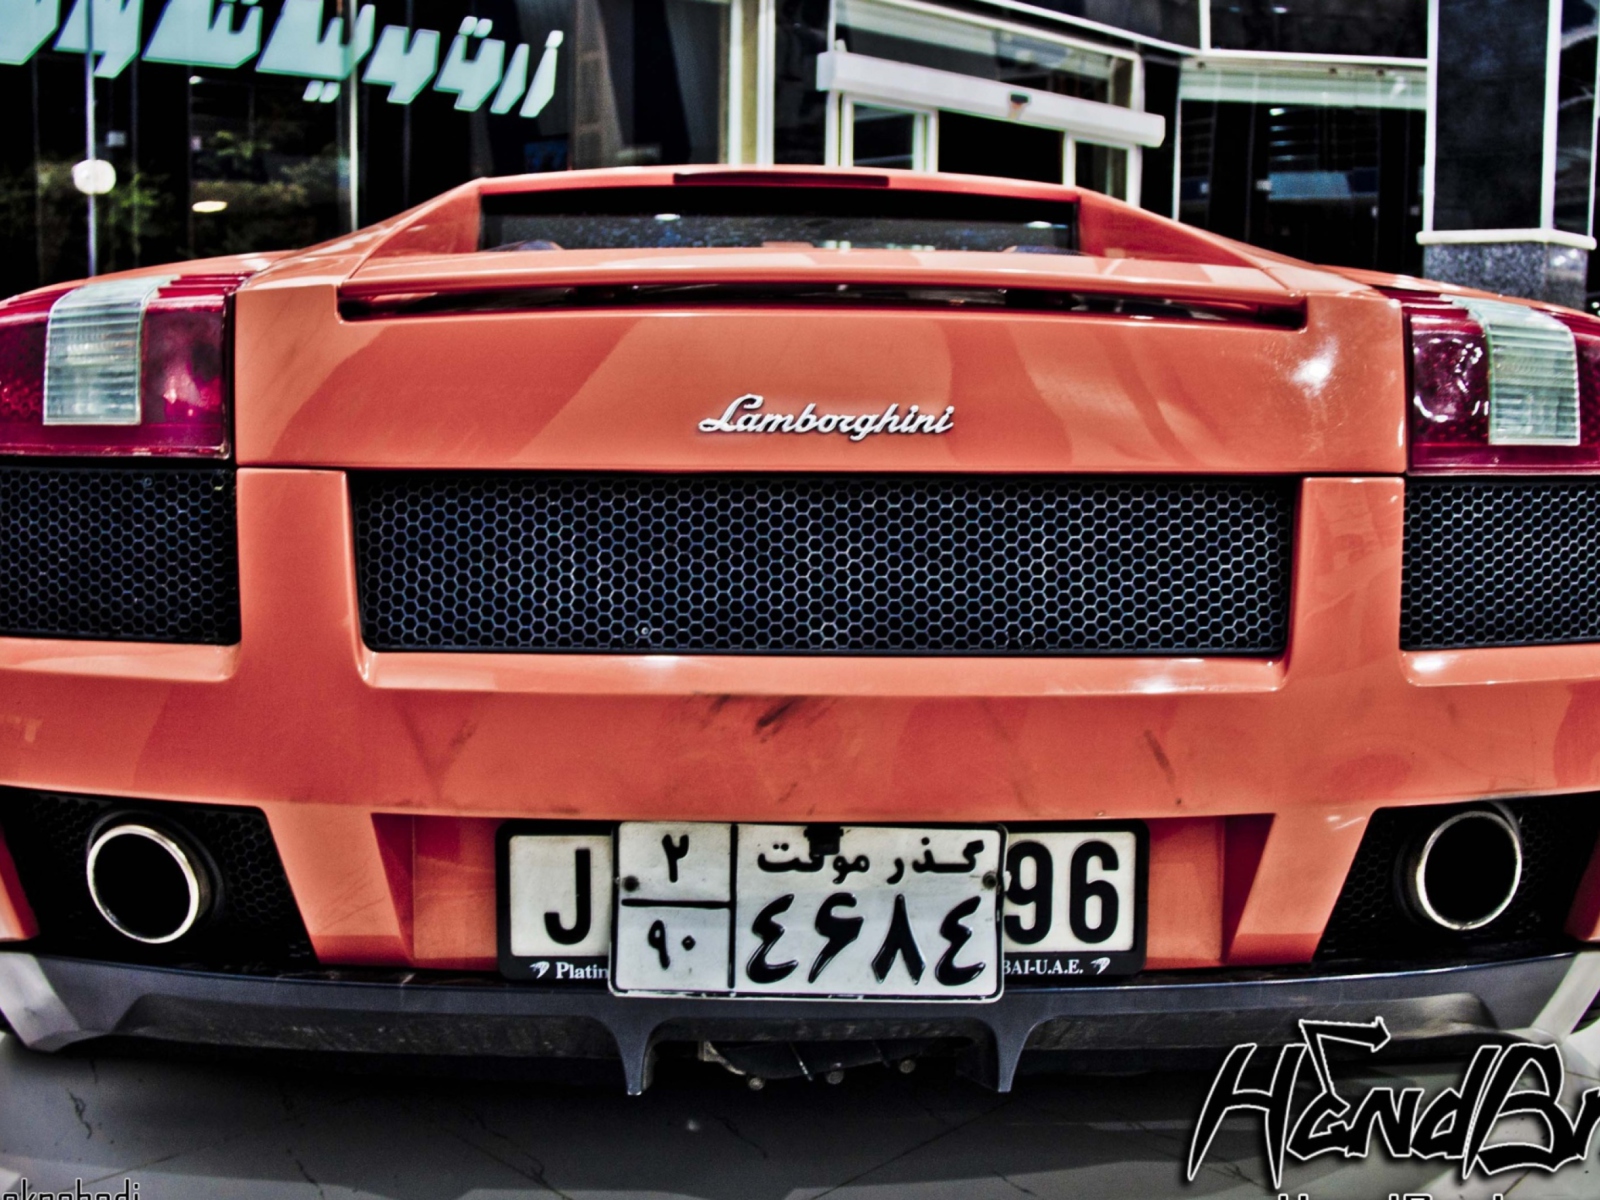 Fondo de pantalla Lamborghini 1600x1200